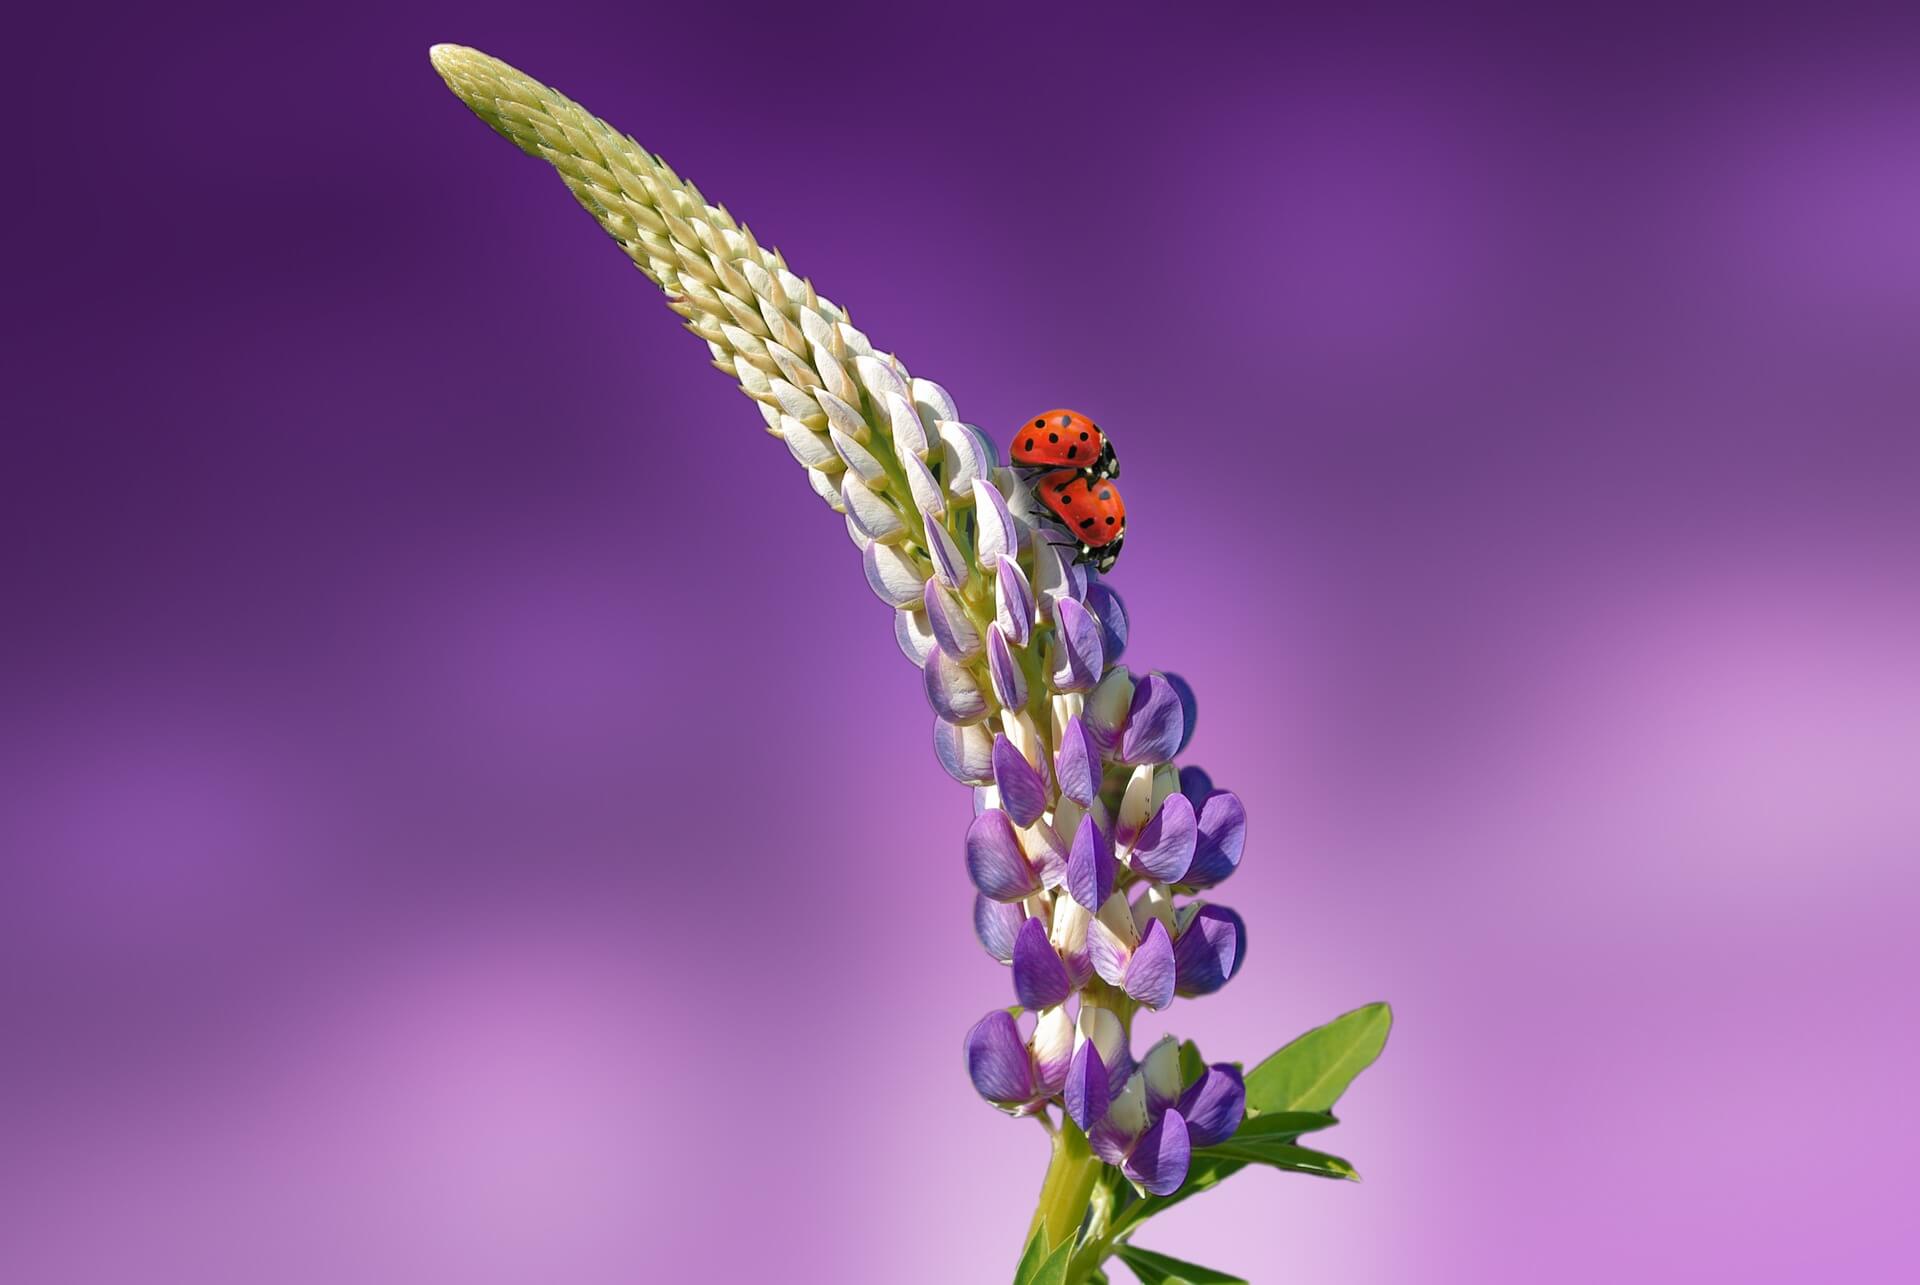 Ladybug on Flower-Background